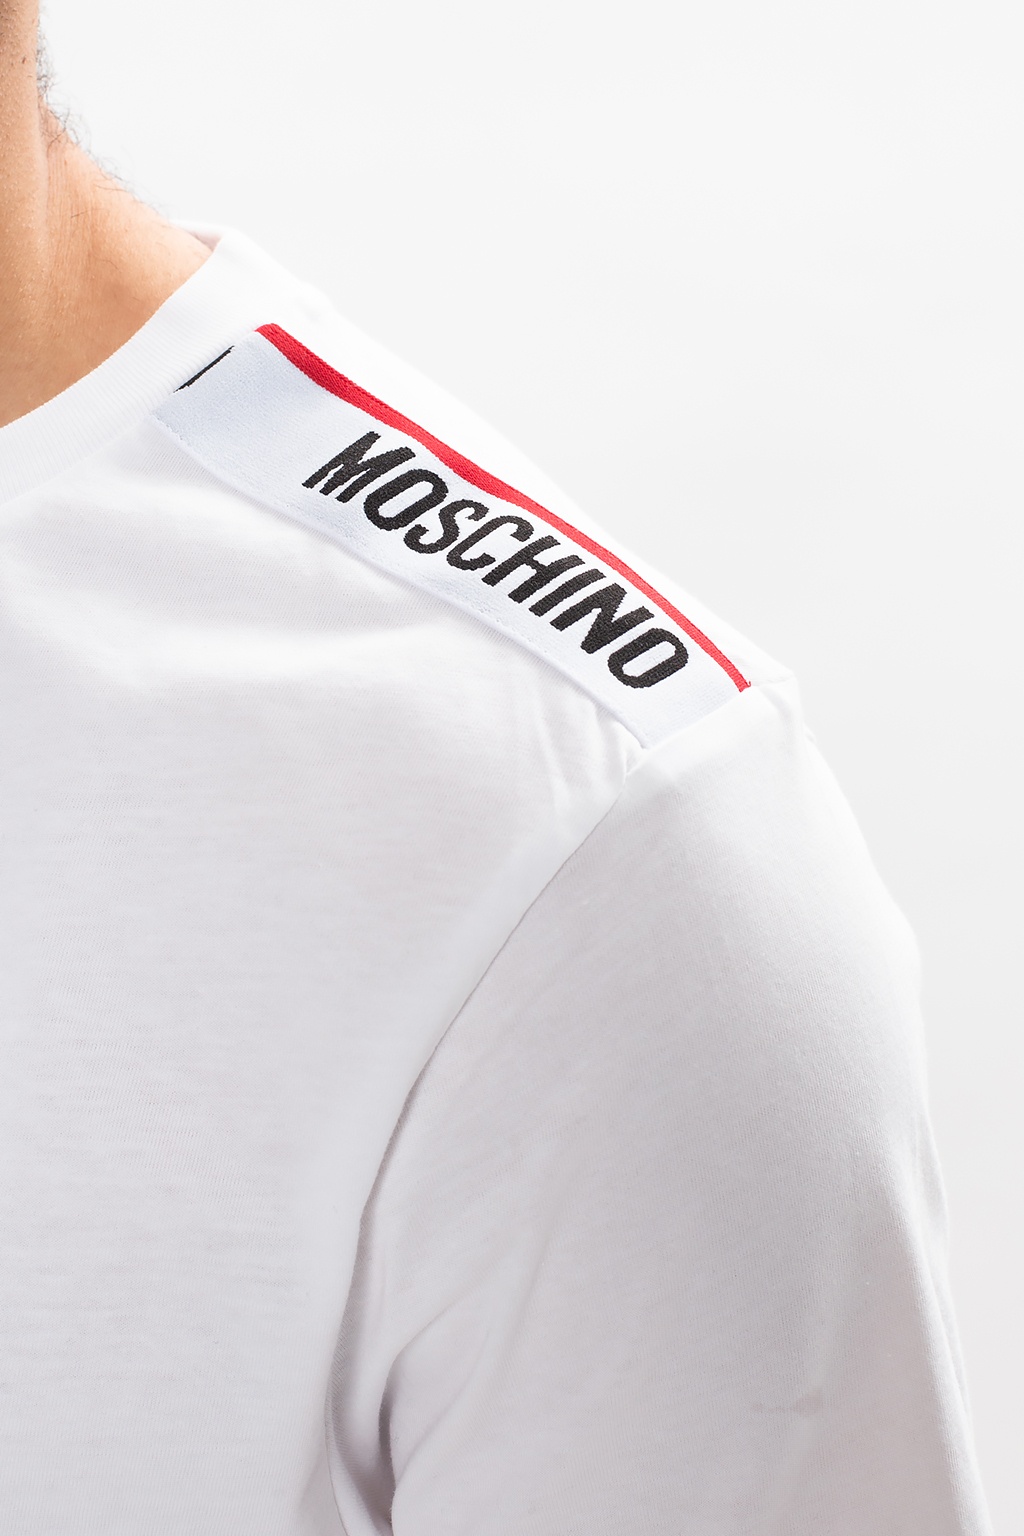 Moschino Underwear Taped Logo T Shirt White